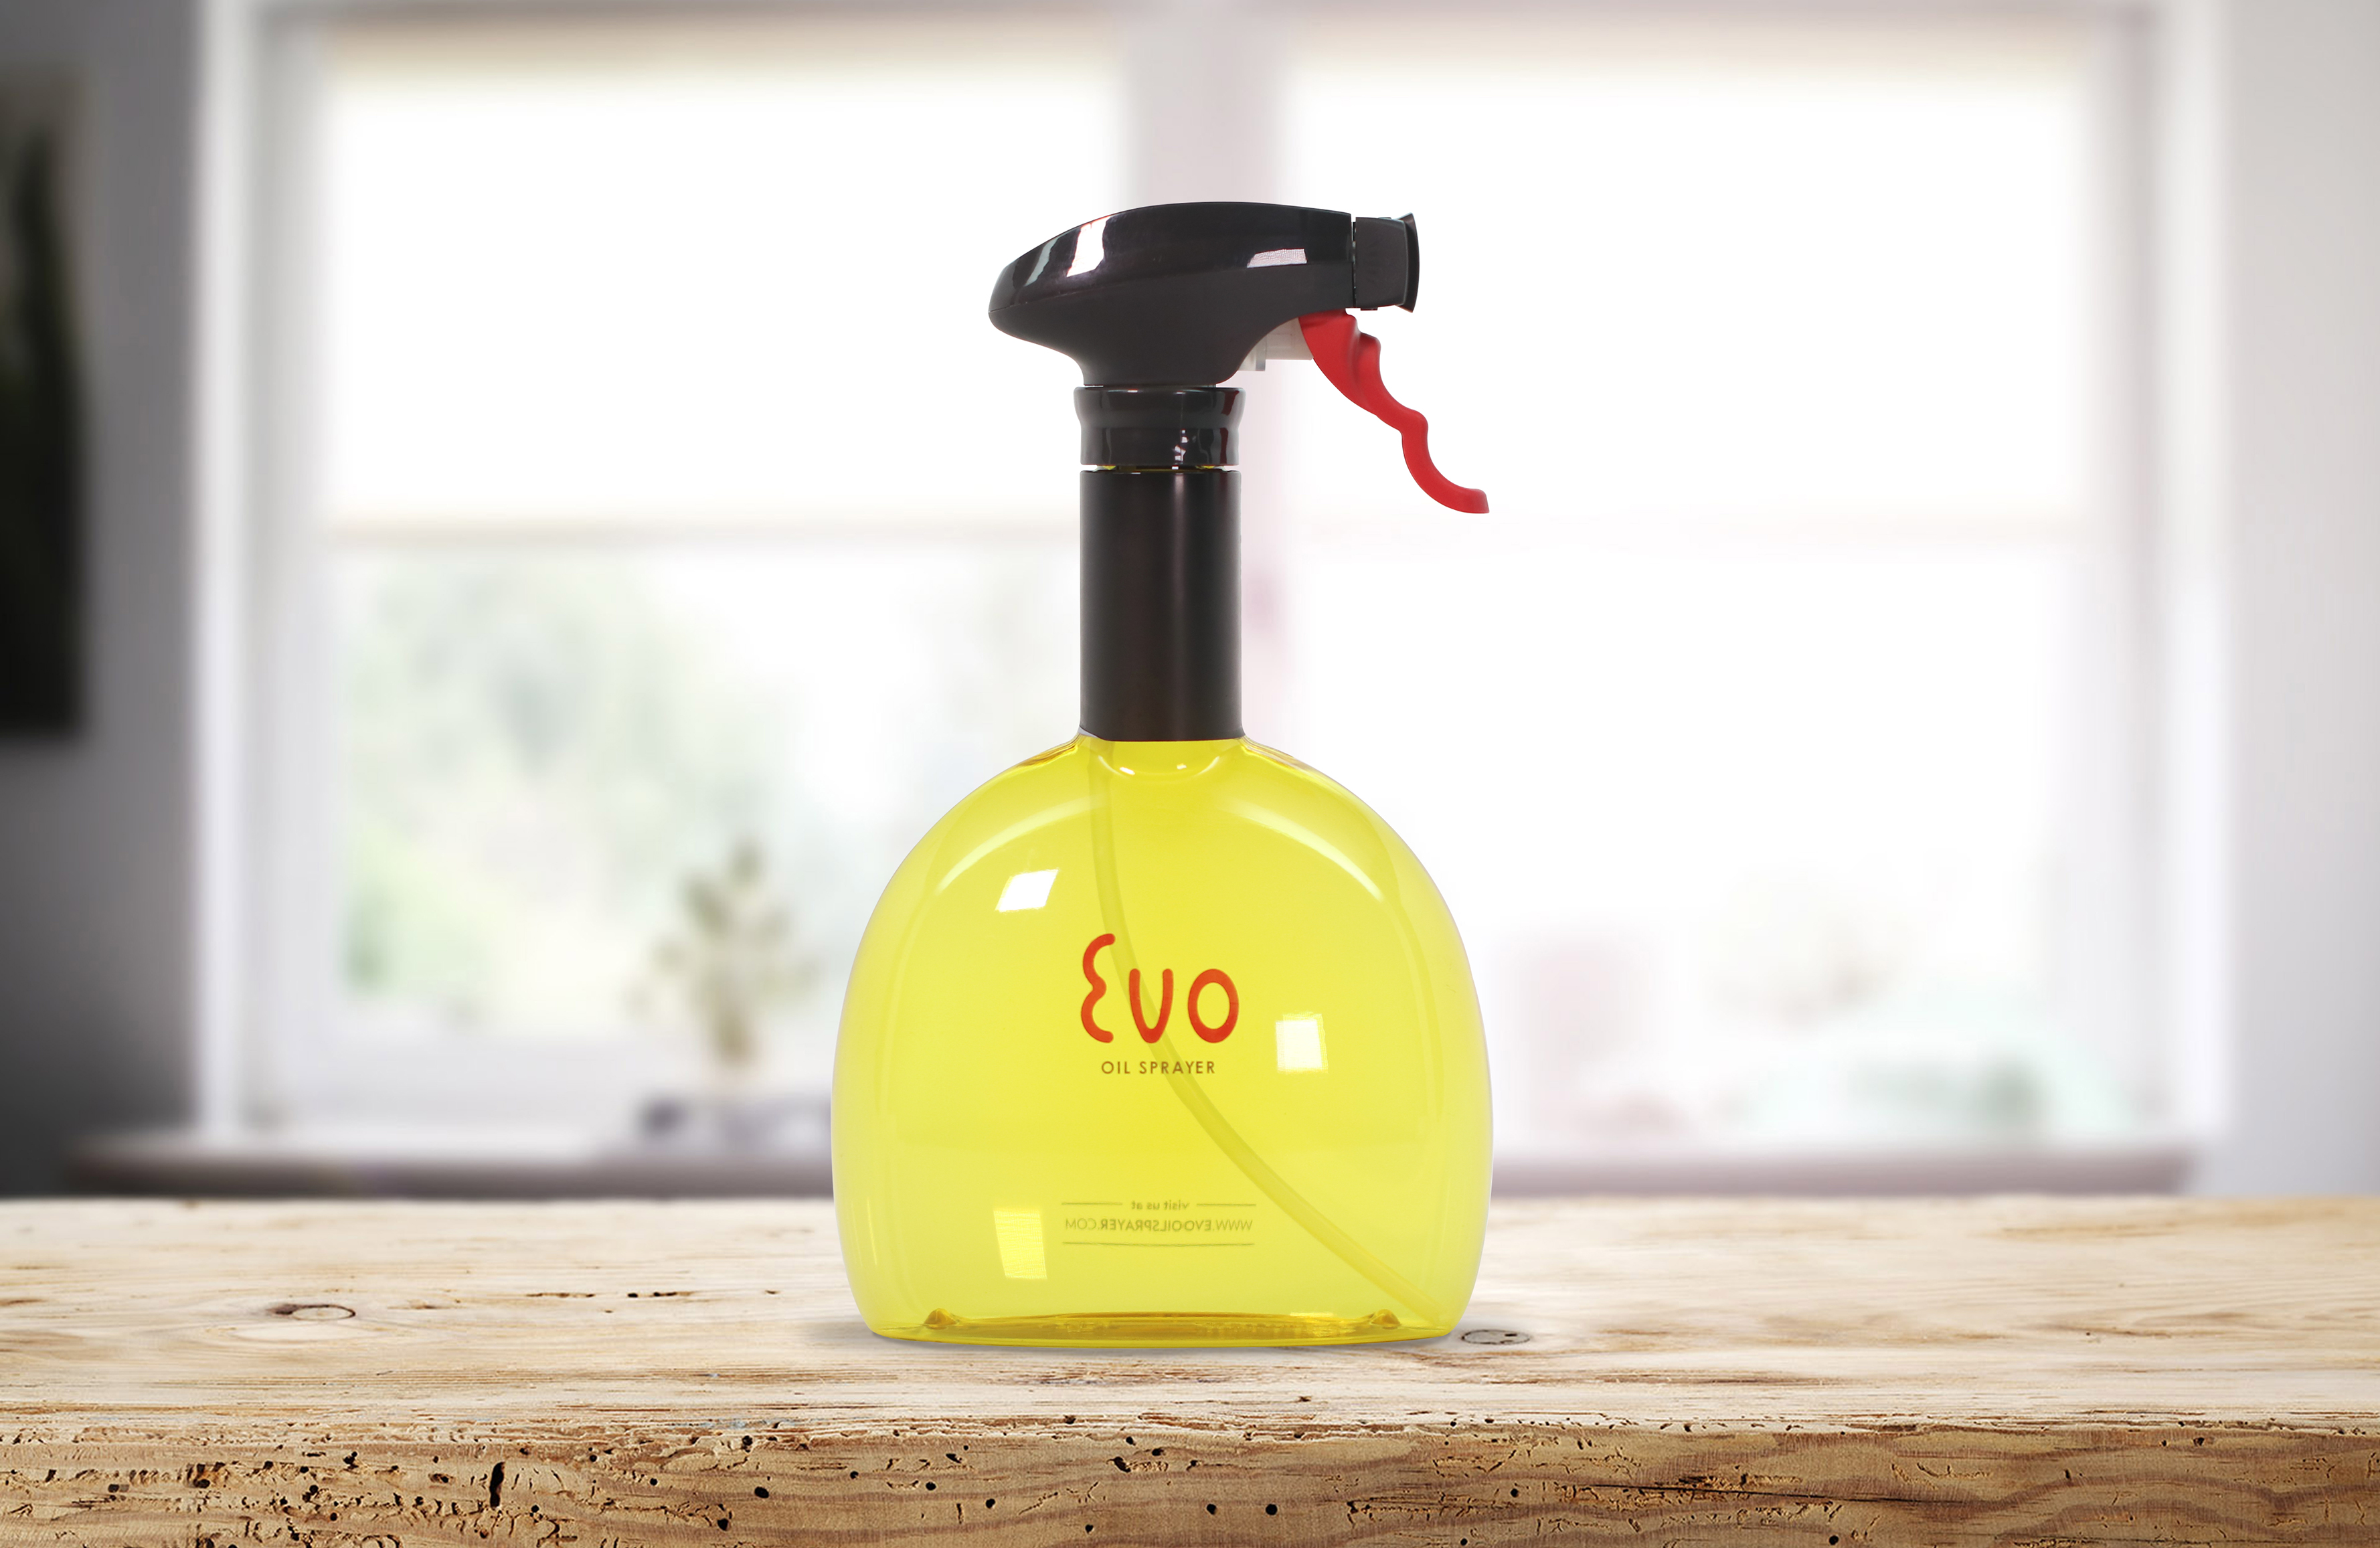 HIC Set of 2 Evo Oil Sprayer Bottles 8118CHAR – Good's Store Online